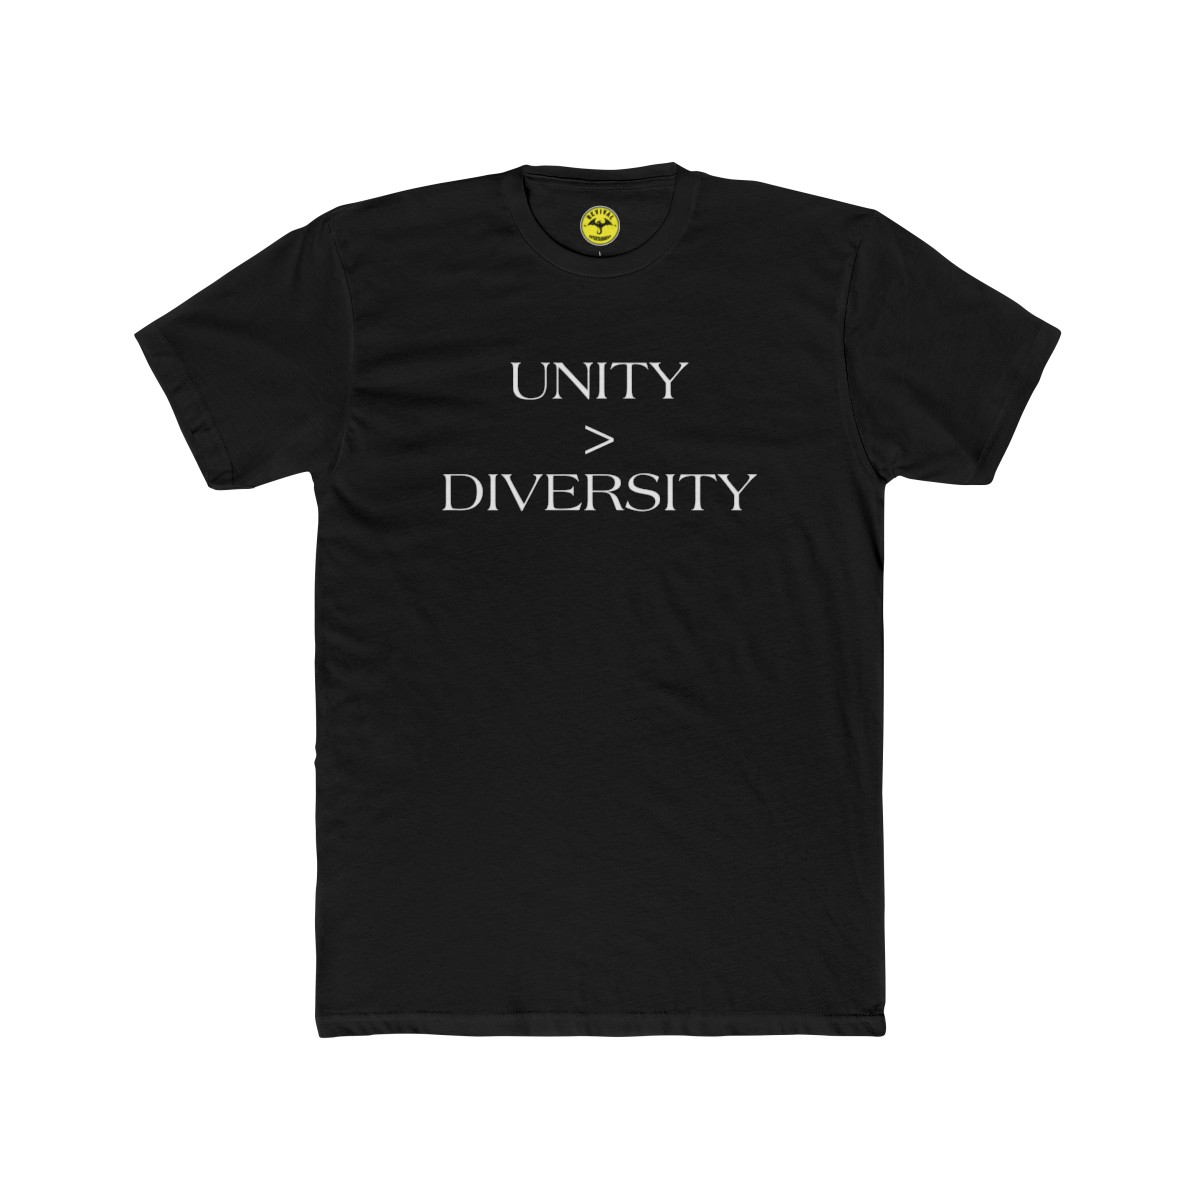 Unity > Diversity Men's Cotton Crew Tee (size: L)